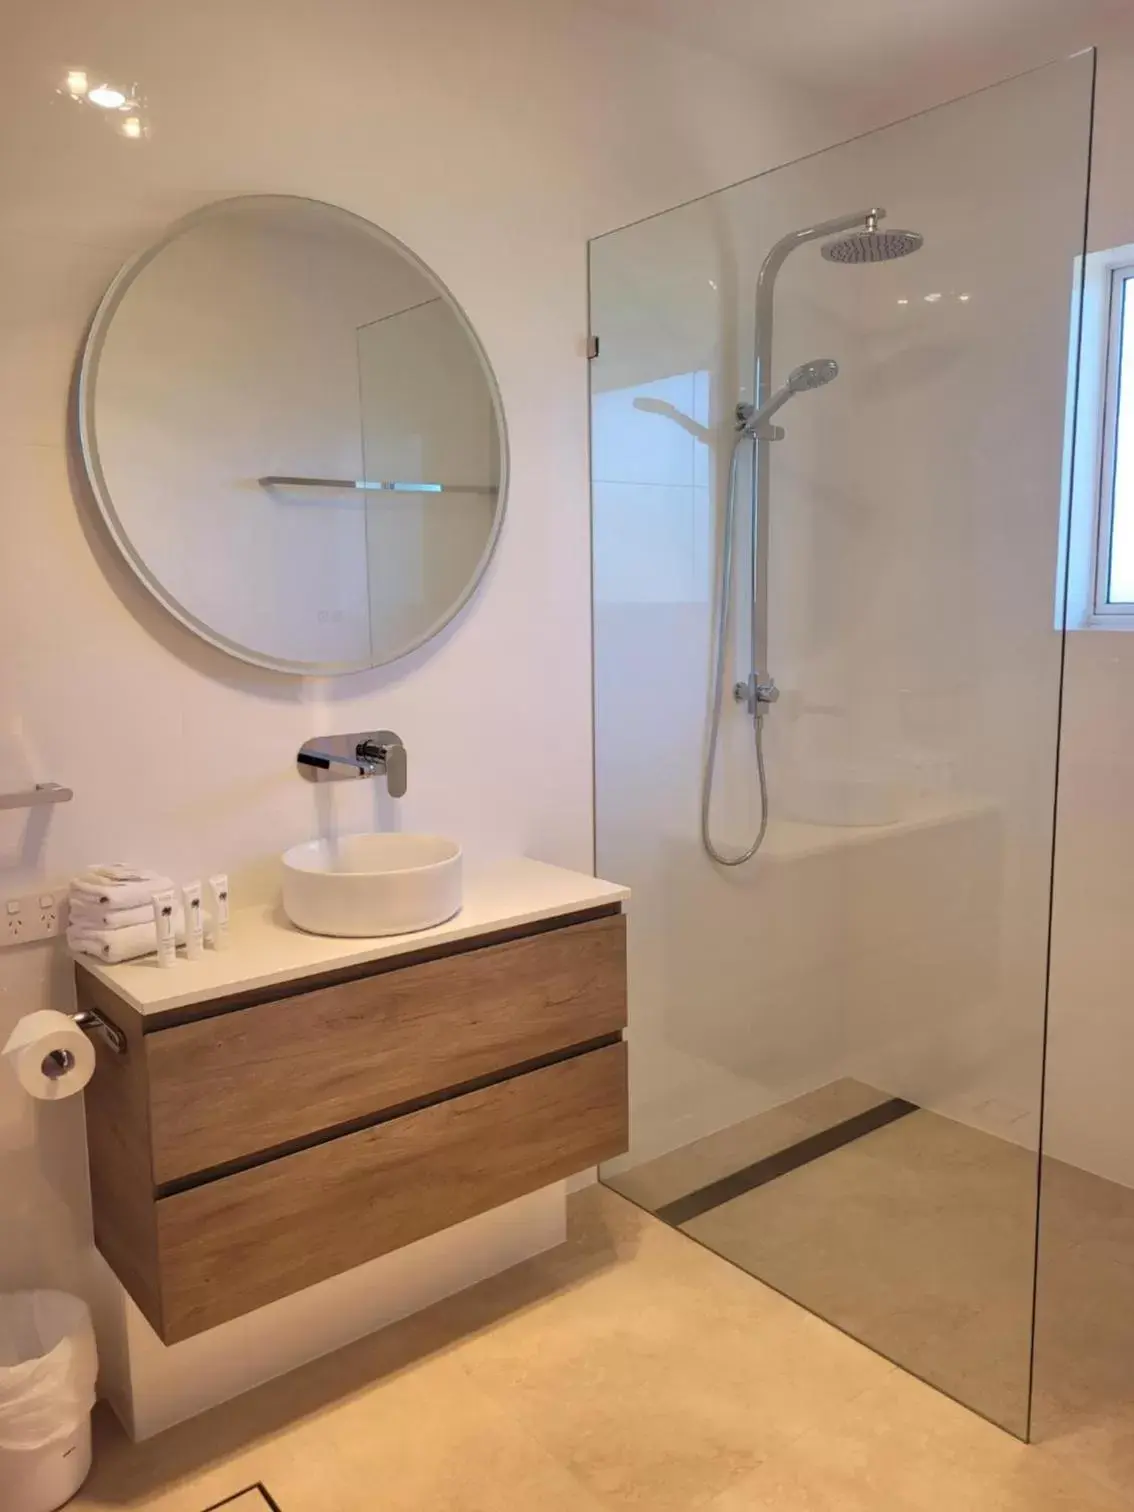 Bathroom in South Pacific Resort & Spa Noosa